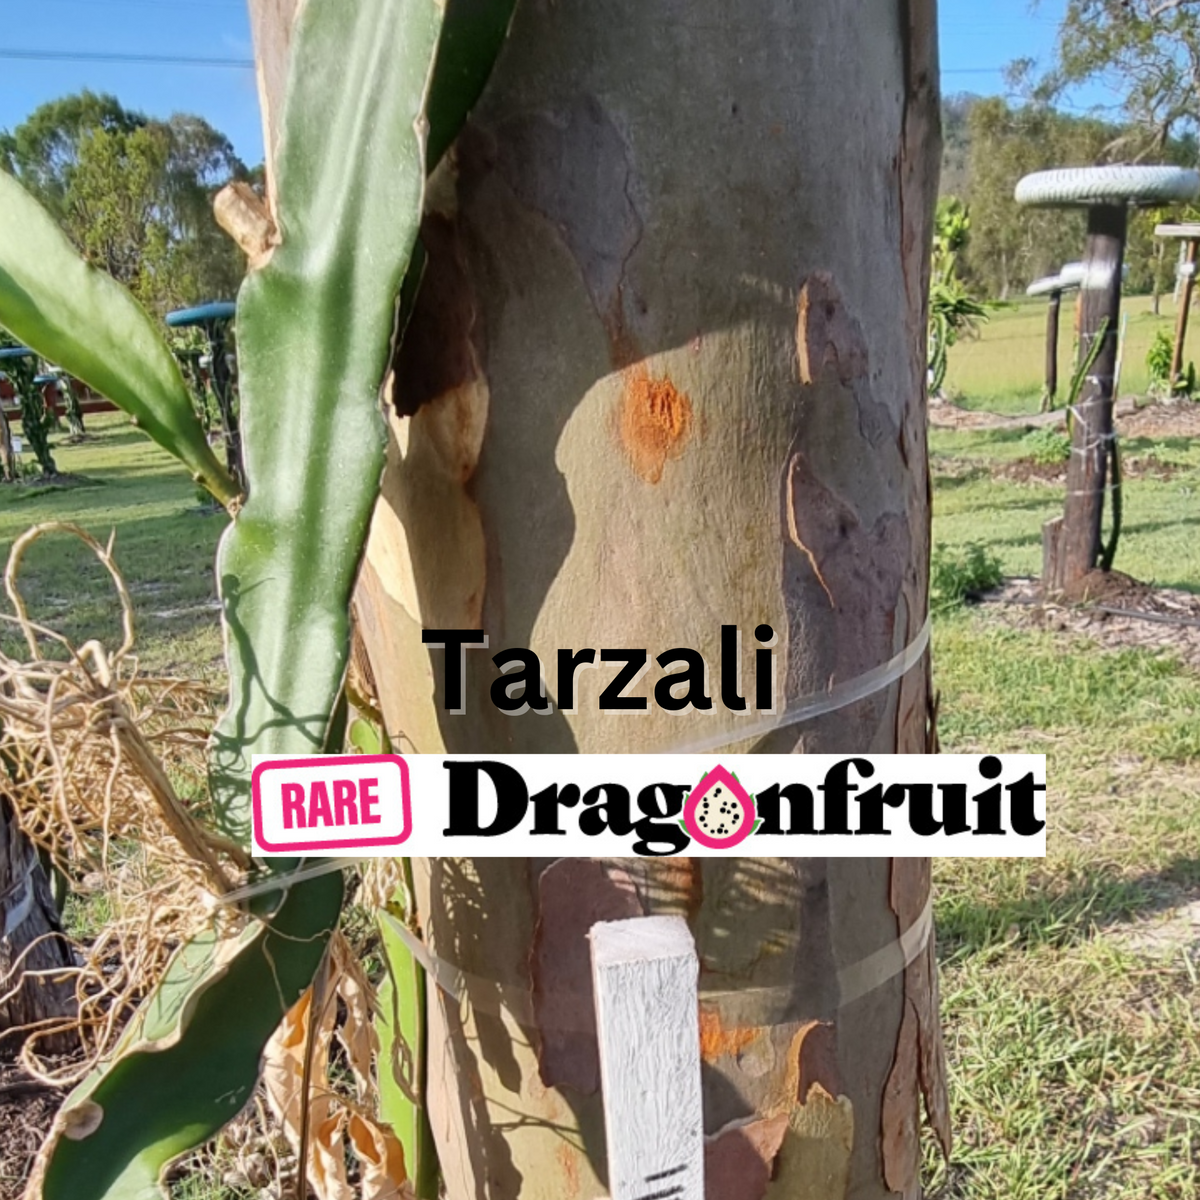 Tarzali Pink dragon fruit - NOID